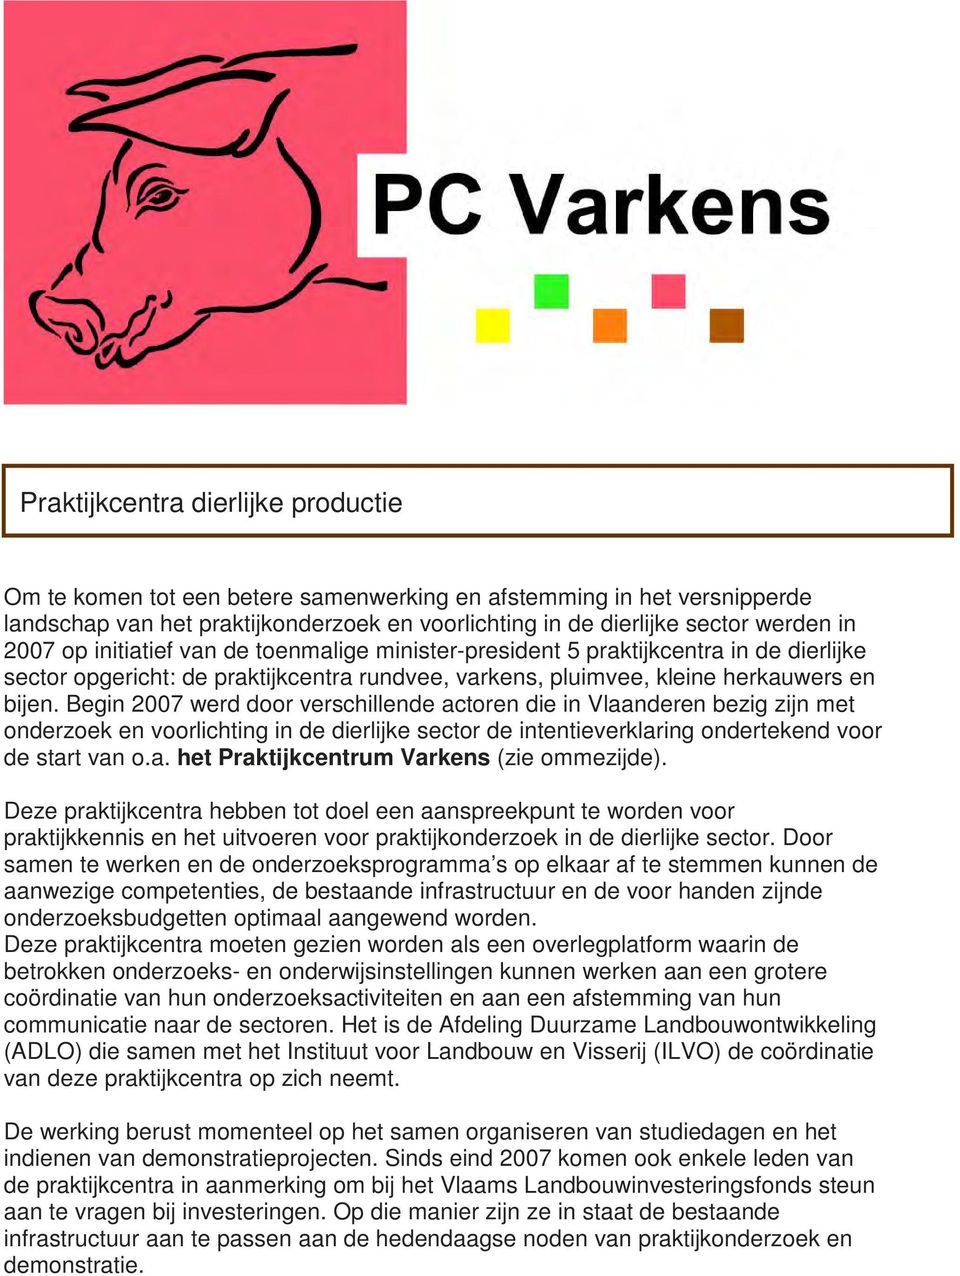 Begin 2007 werd door verschillende actoren die in Vlaanderen bezig zijn met onderzoek en voorlichting in de dierlijke sector de intentieverklaring ondertekend voor de start van o.a. het Praktijkcentrum Varkens (zie ommezijde).